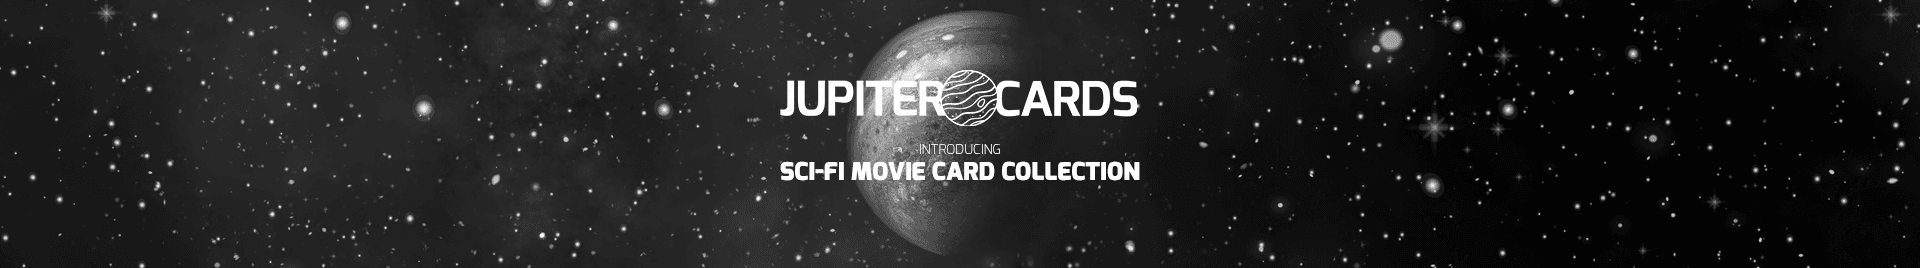 Jupiter_Cards banner